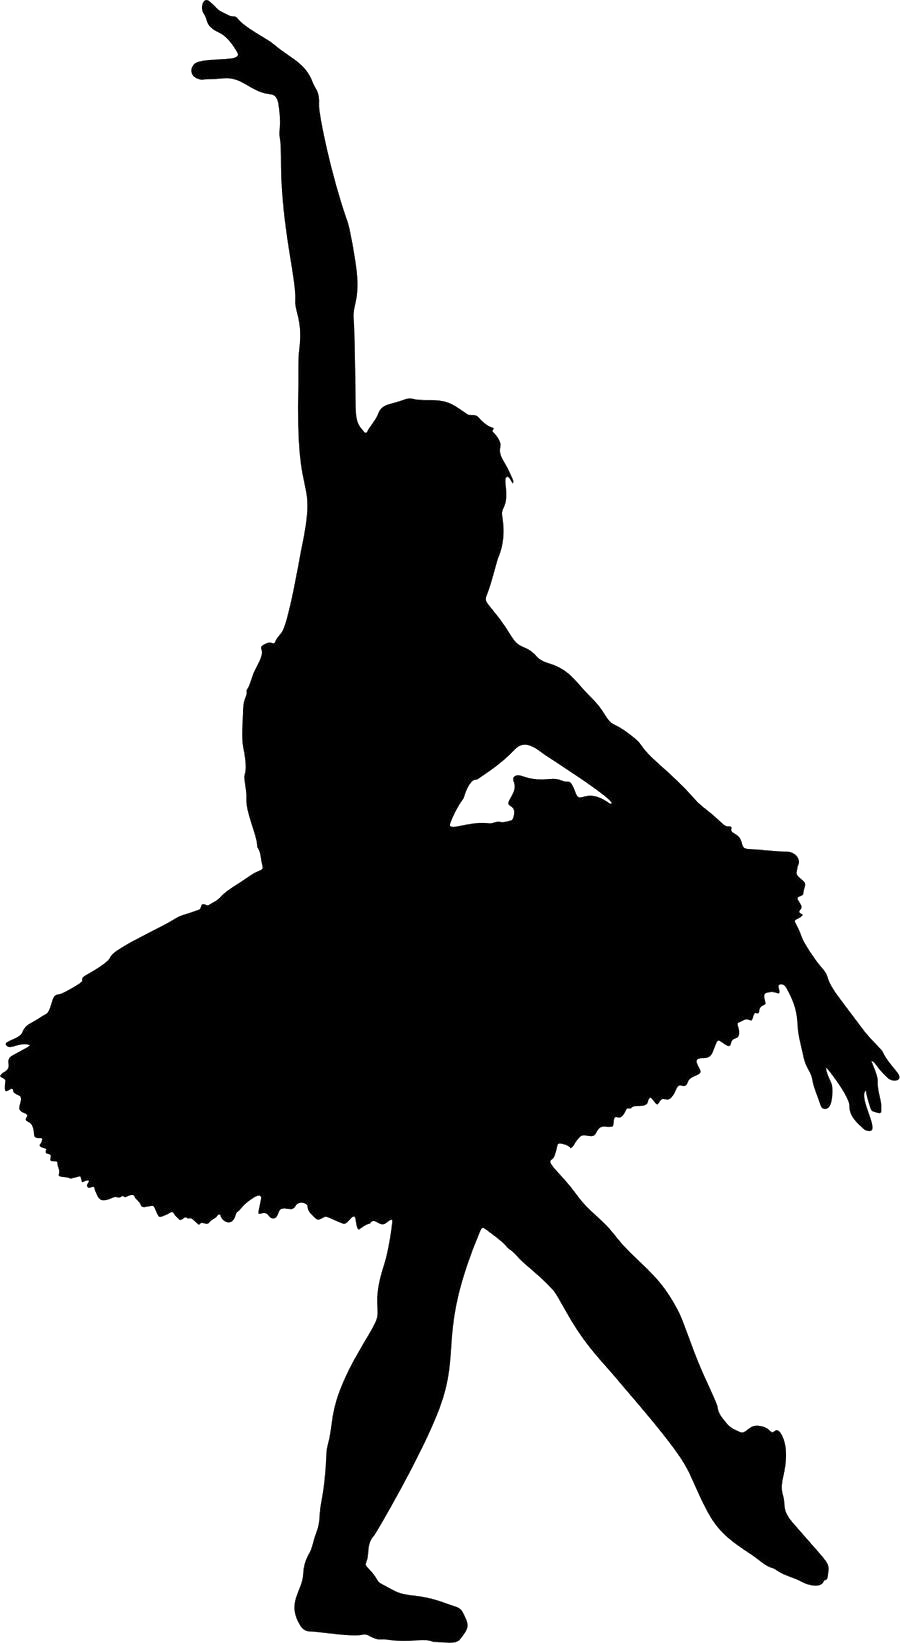 Bailarina silueta fondo Transparente PNG